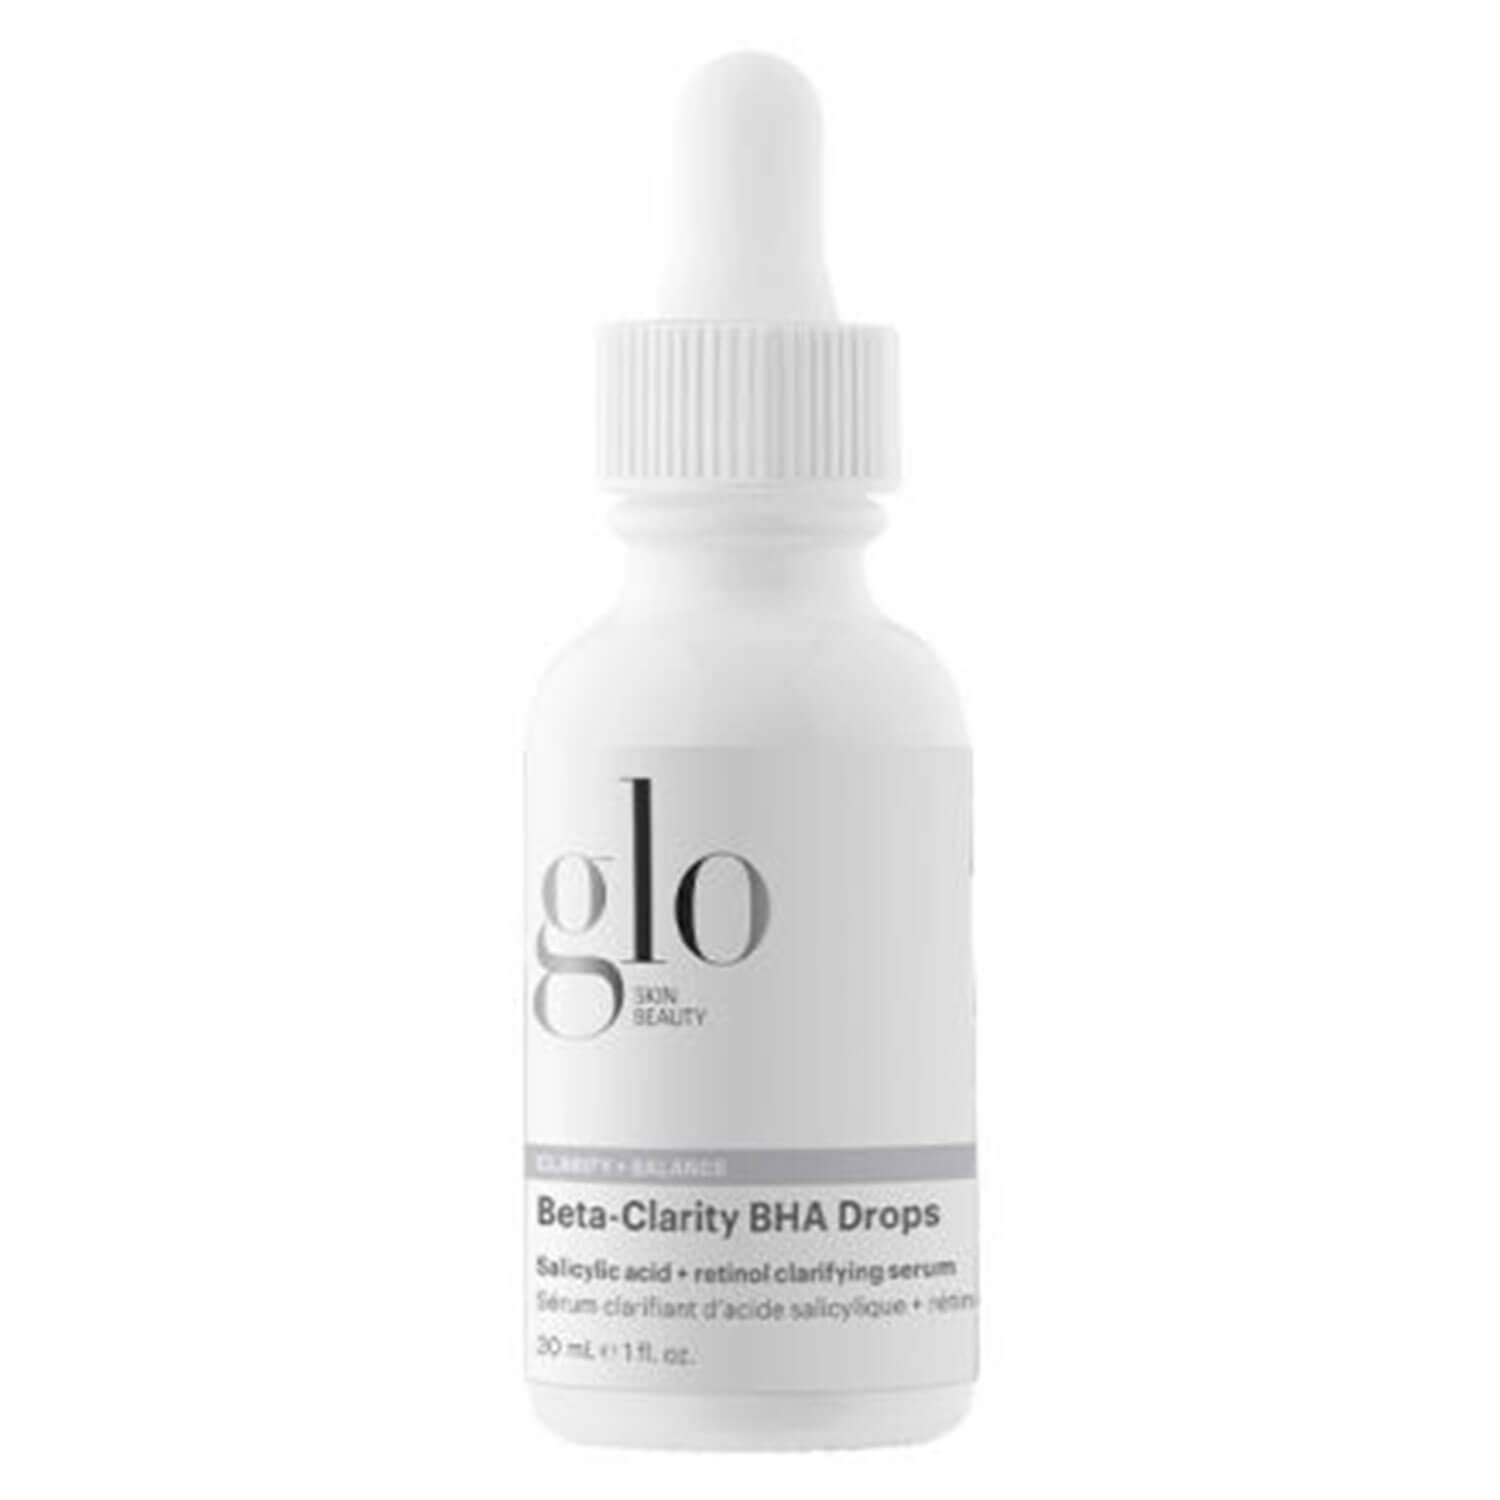 Glo Skin Beauty Care - Beta-Clarity BHA Drops